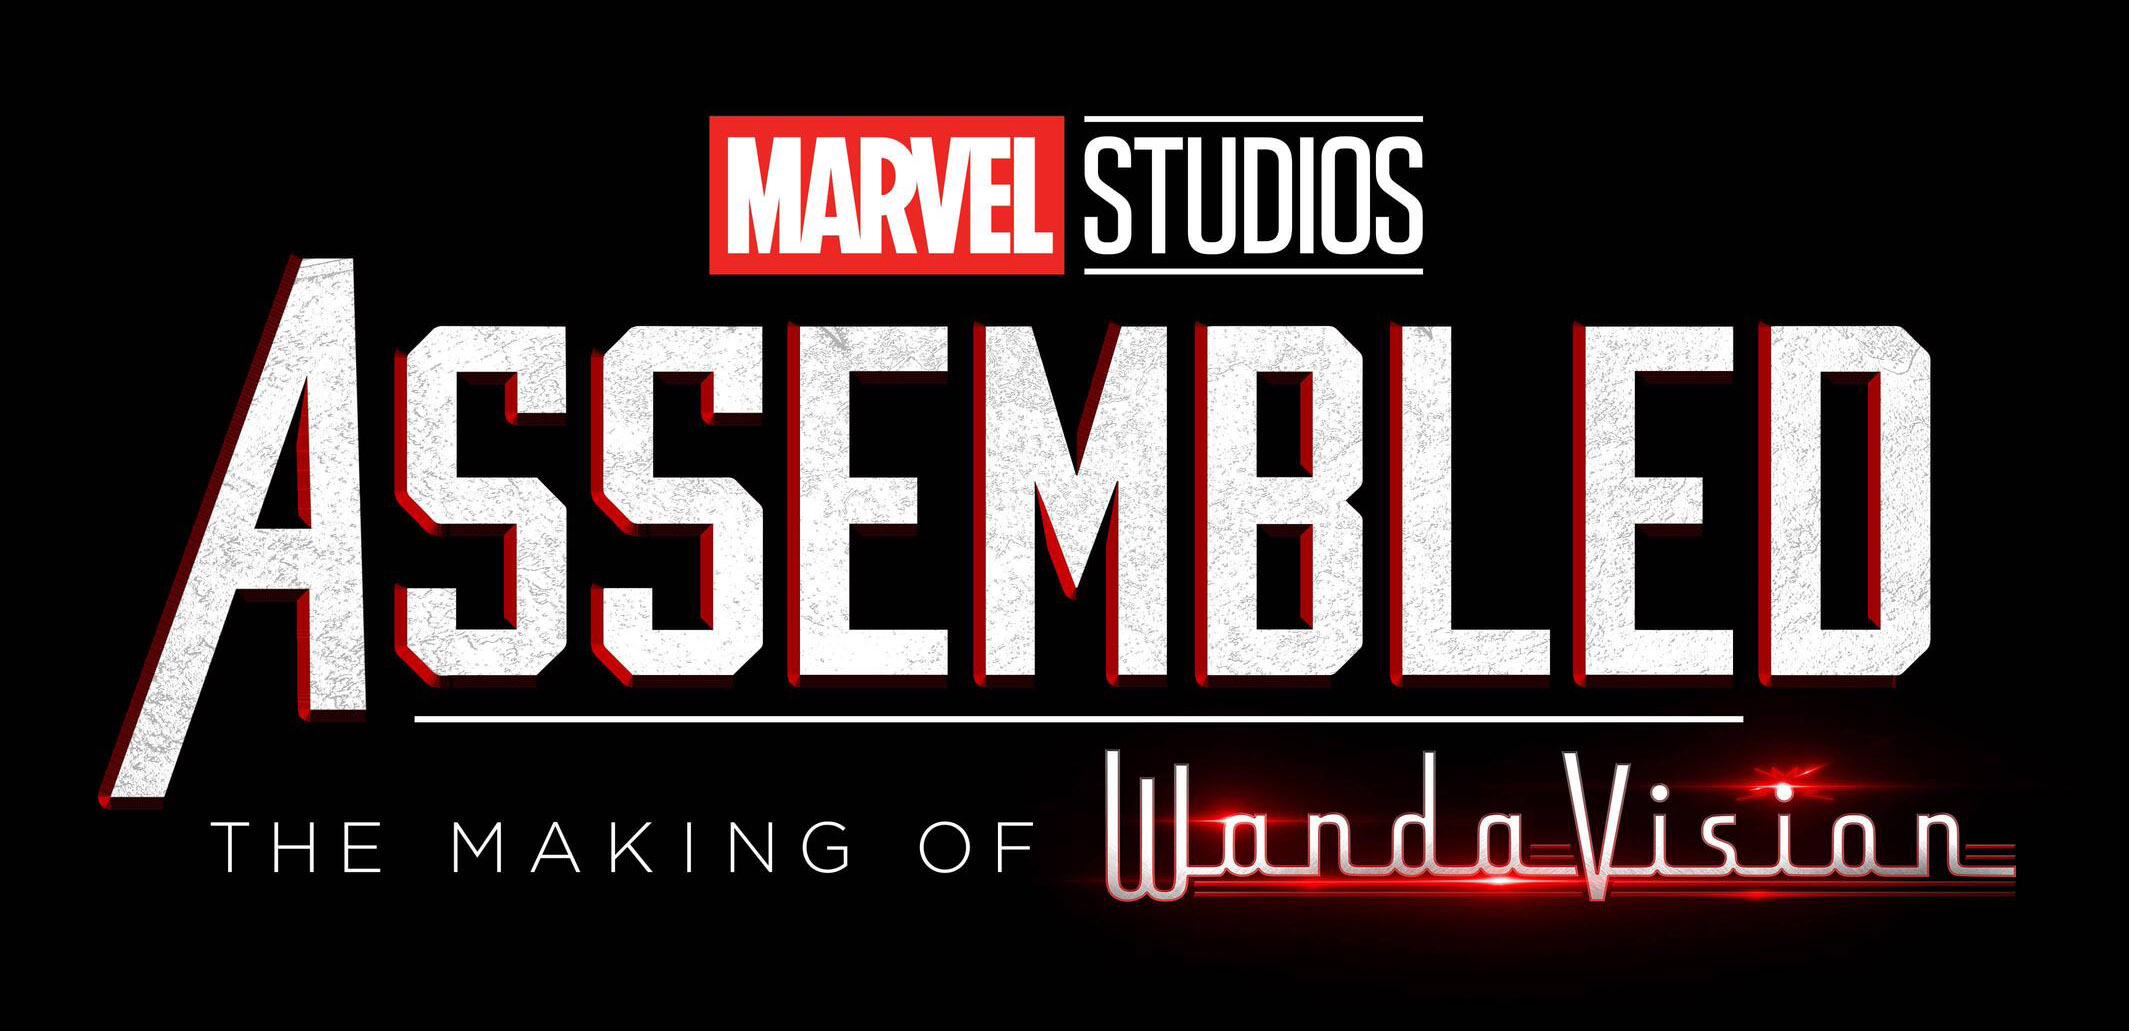 Marvel vai lançar série documental sobre suas produções, entenda!